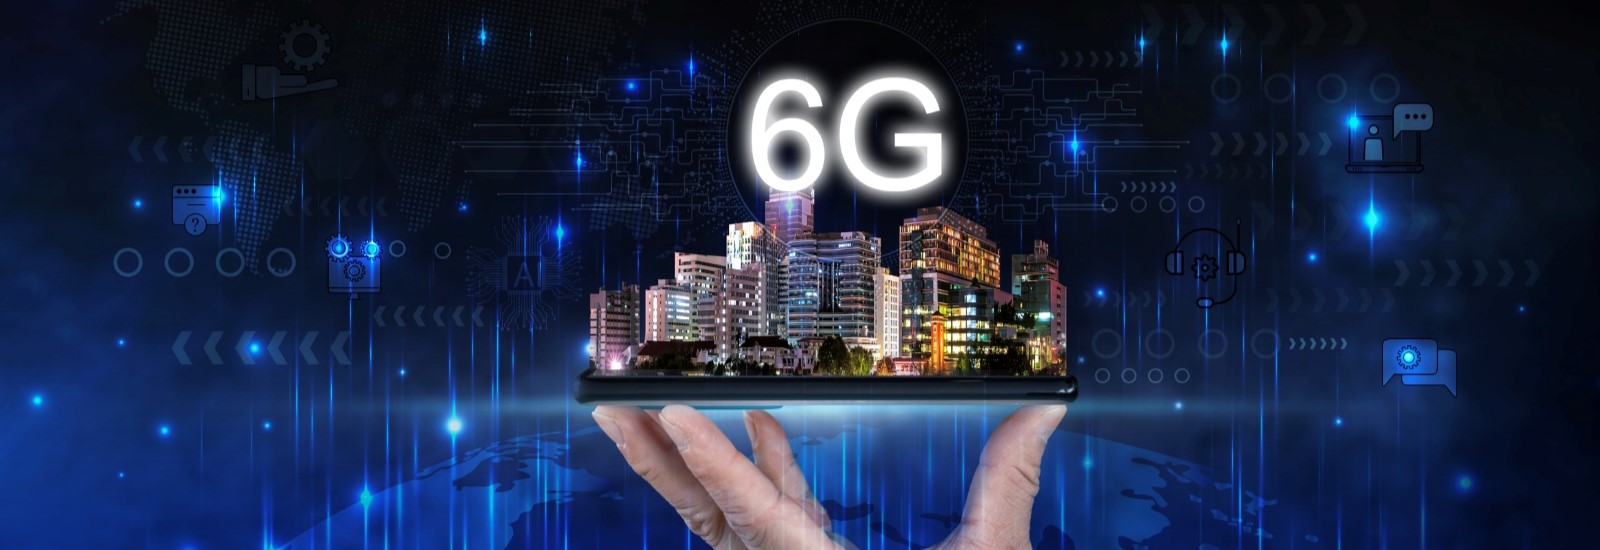 4月23日、3GPPが次世代移動通信システム「6G」のロゴを発表